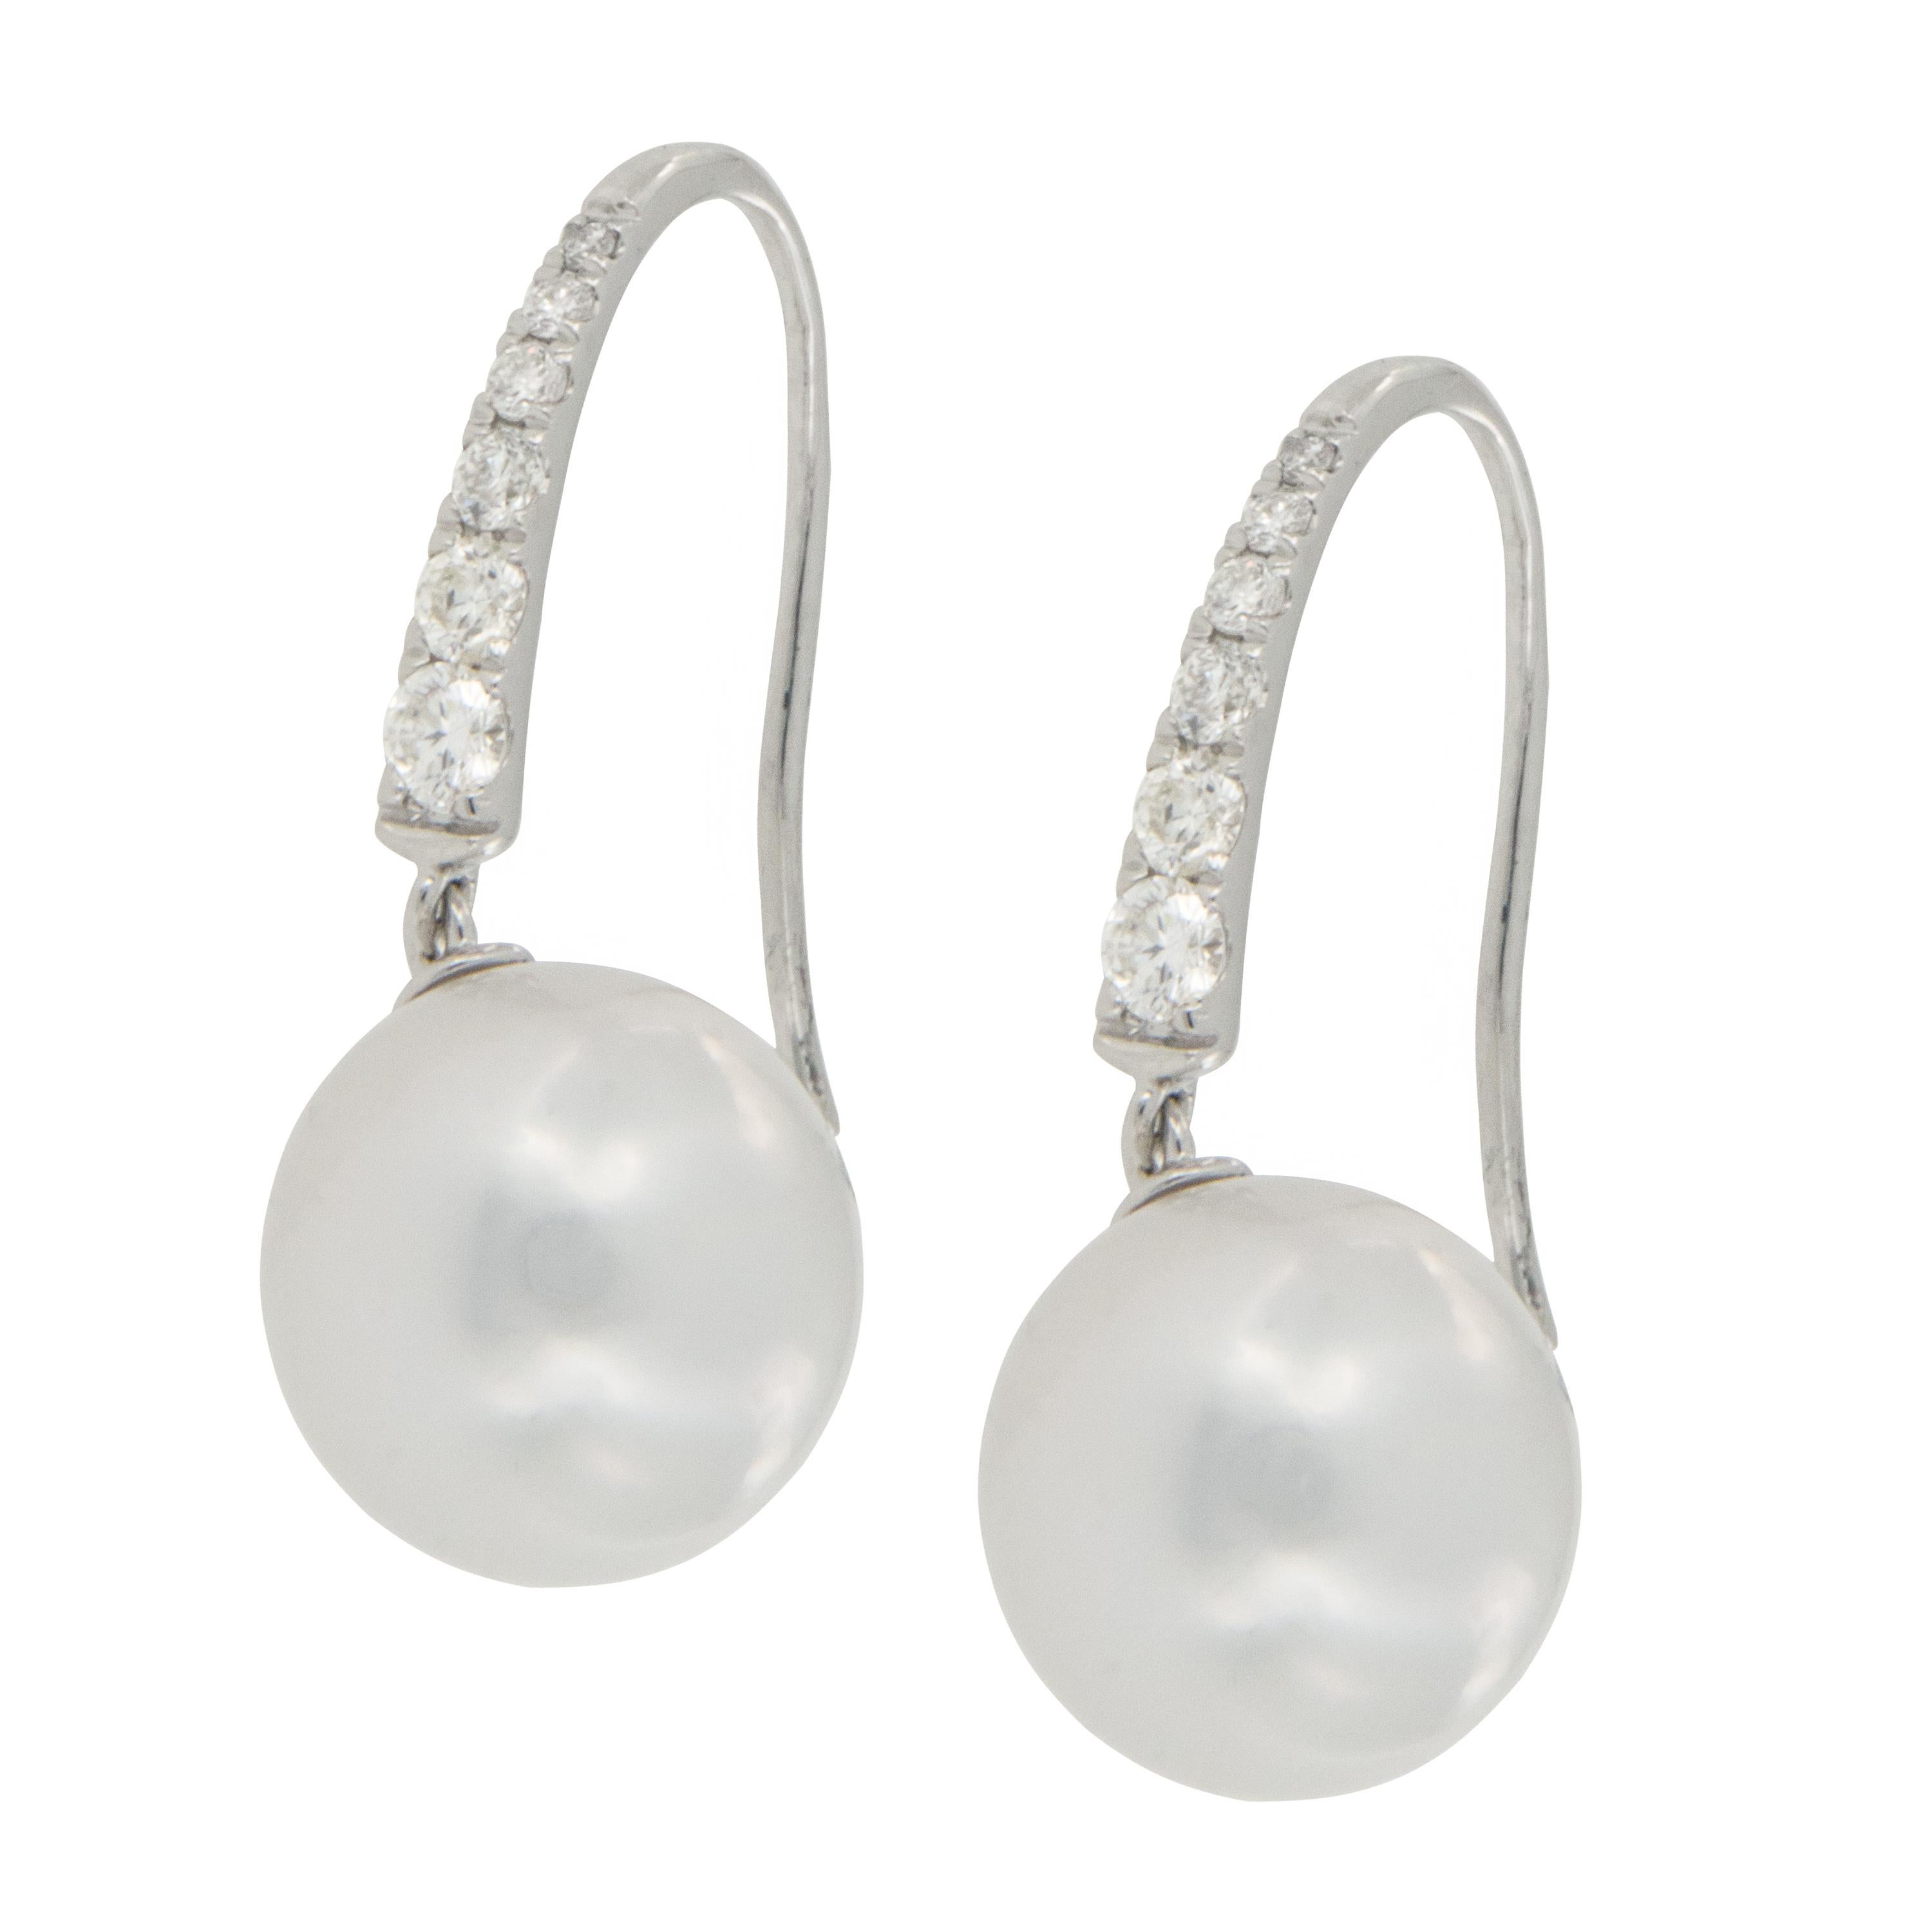 Kannst du CLASSIC sagen?! Diese perfekt aufeinander abgestimmten weißen Perlen aus der Südsee sind wunderschön mit 0,26 graduierten feinen Diamanten an der Spitze gepaart. Perfekt für Ihren besonderen Hochzeitstag, jeden Tag oder Abend. Inklusive